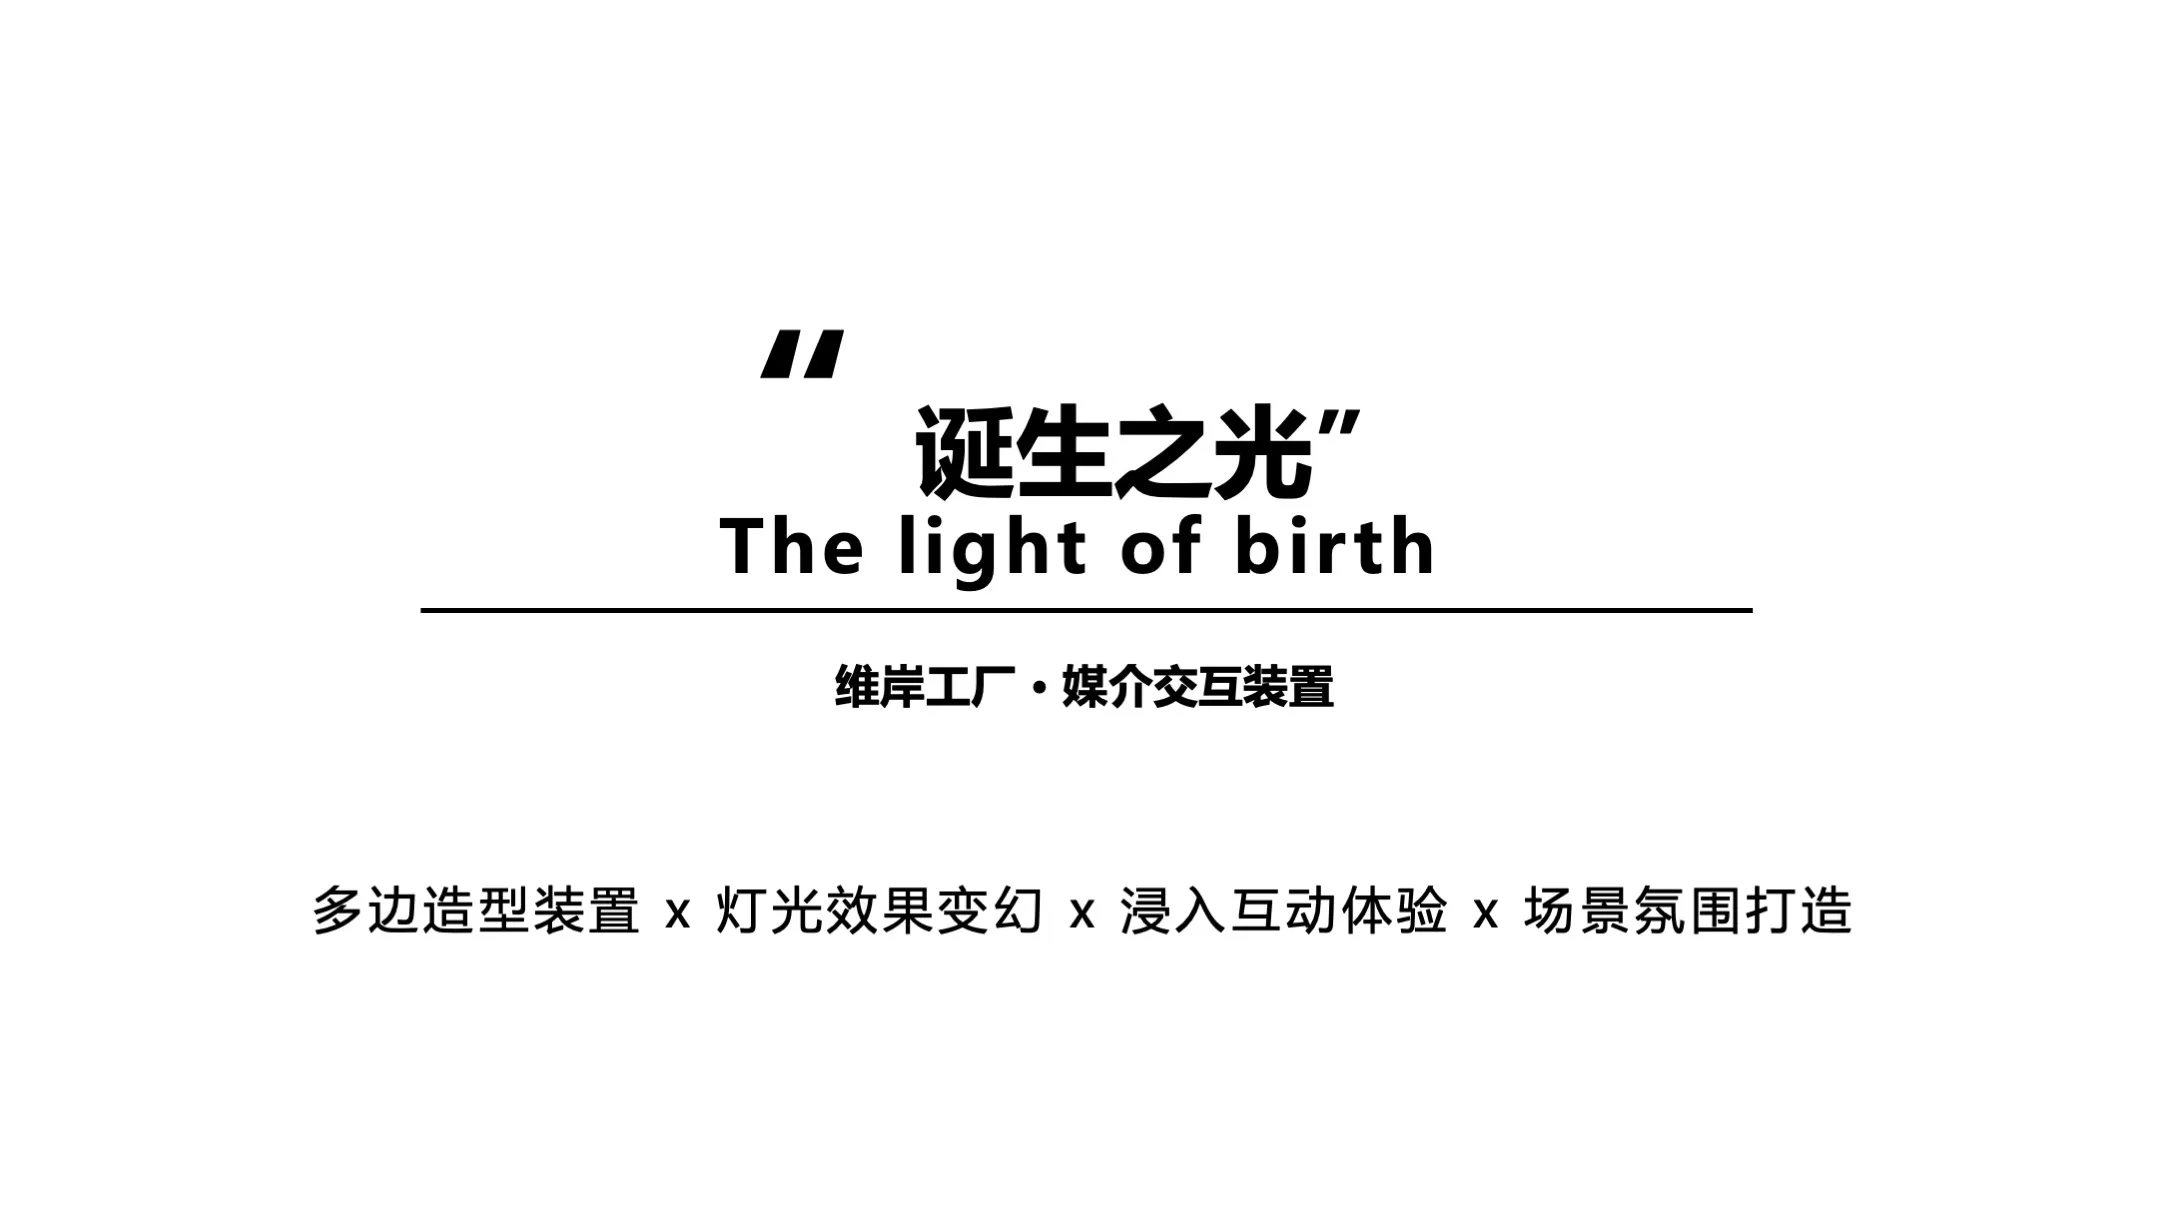 【诞生之光】light of birth媒介交互装置